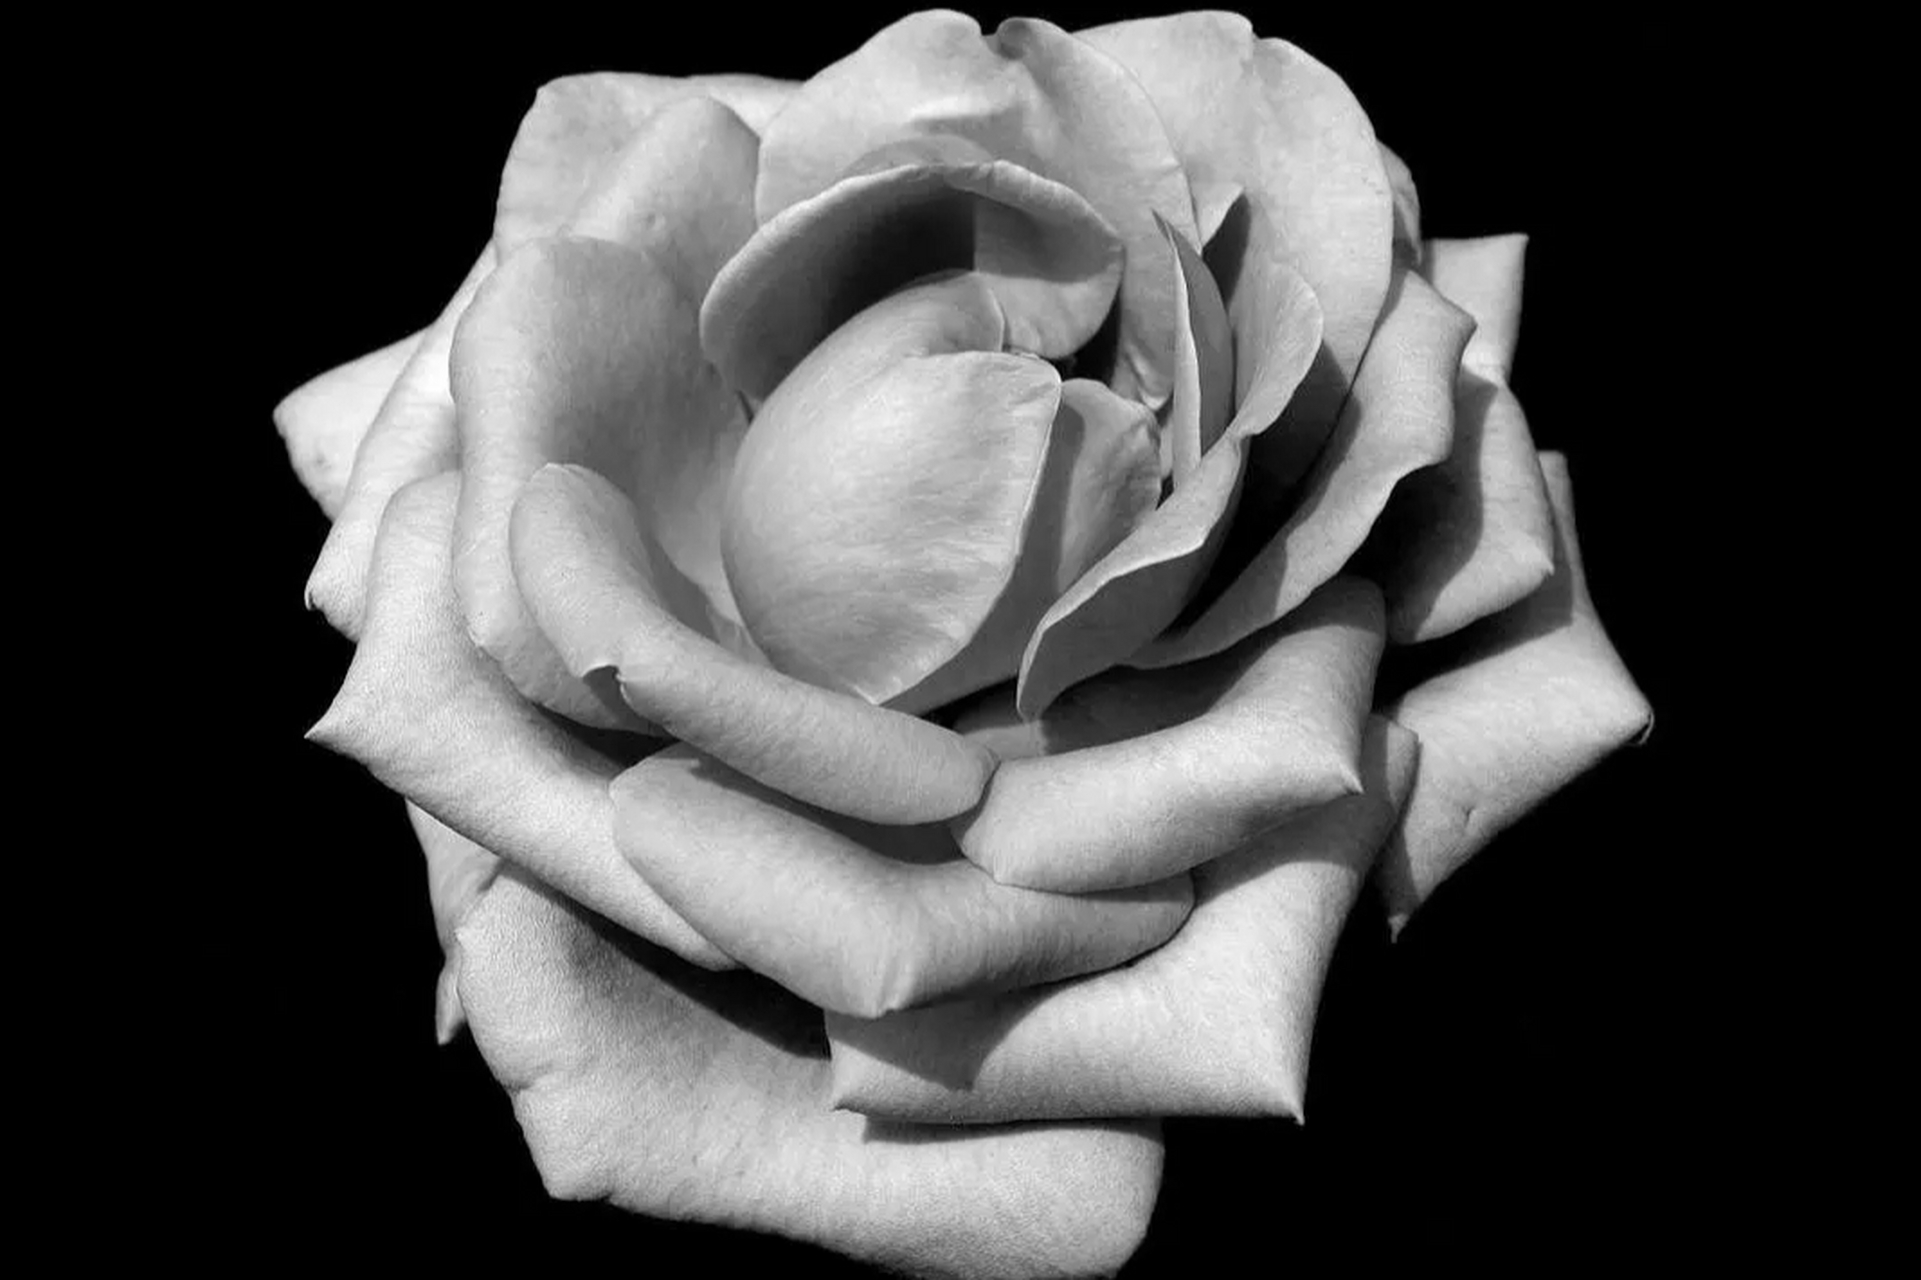 灰色的玫瑰花语图片